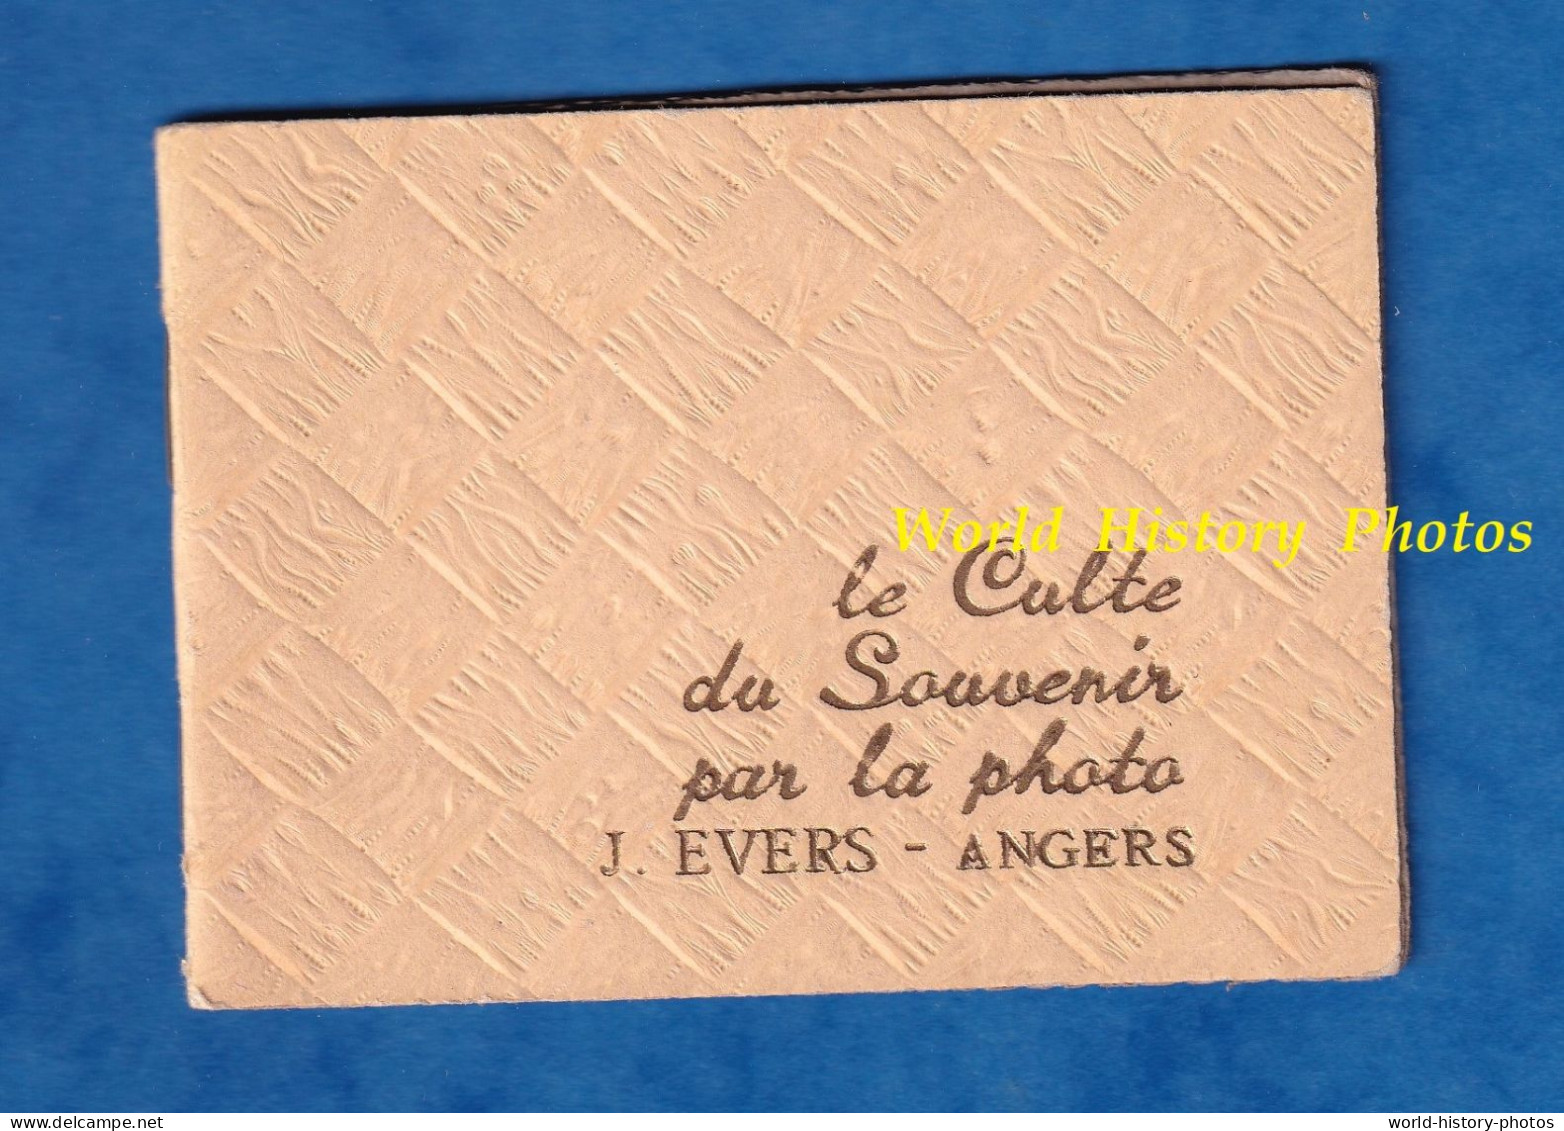 Petit Album Publicitaire Pour Photo - ANGERS - J. EVERS Photographe - Vers 1935 1950 - Le Culte Du Souvenir Par La - Supplies And Equipment